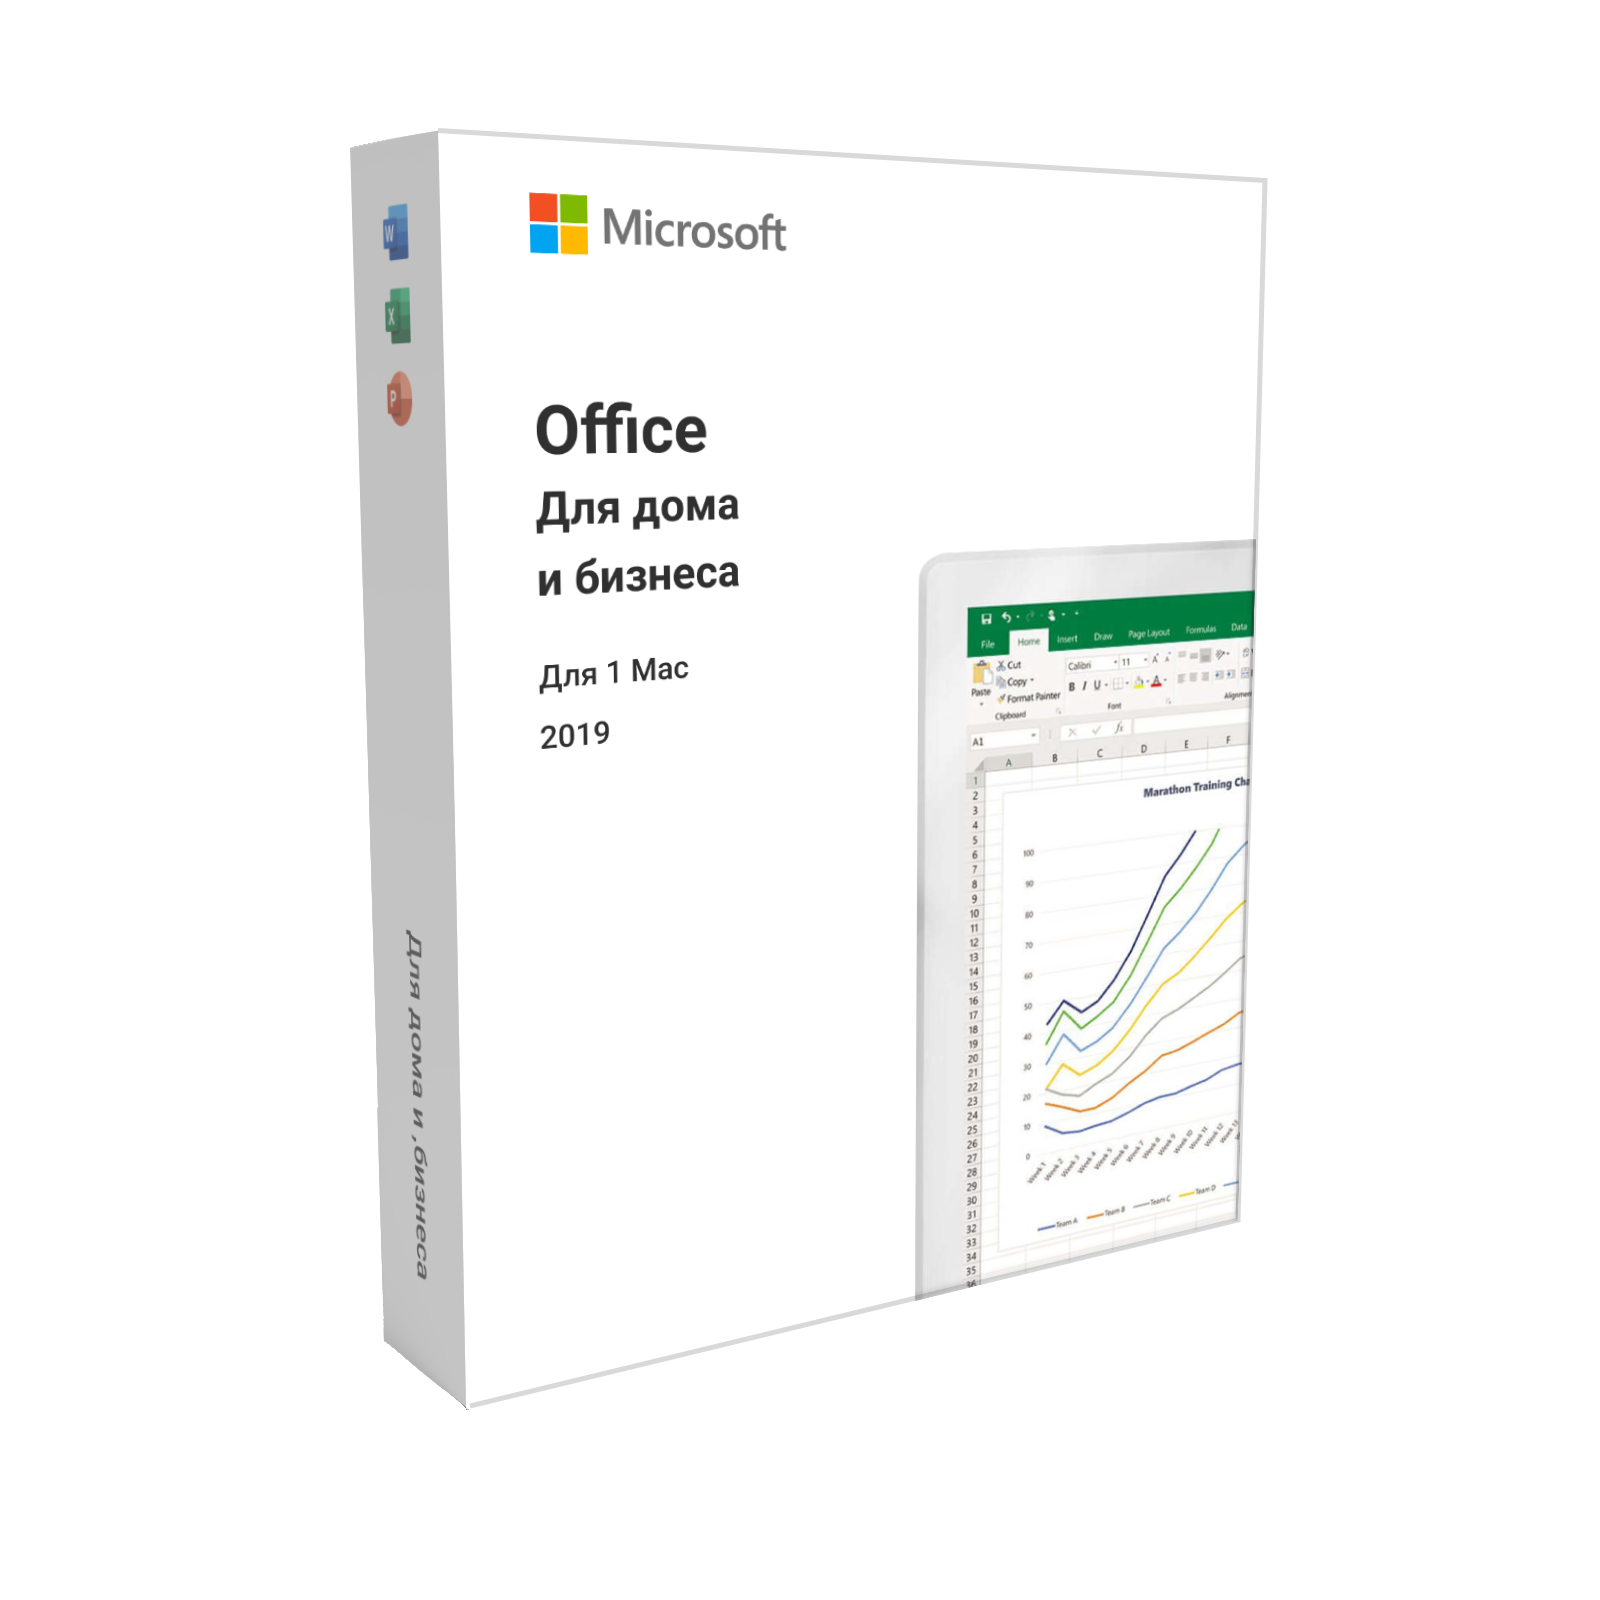 Офисный пакет Microsoft Office Home and student 2021. Office для дома и бизнеса. Office для дома и бизнеса 2019. Майкрософт офис 2019.